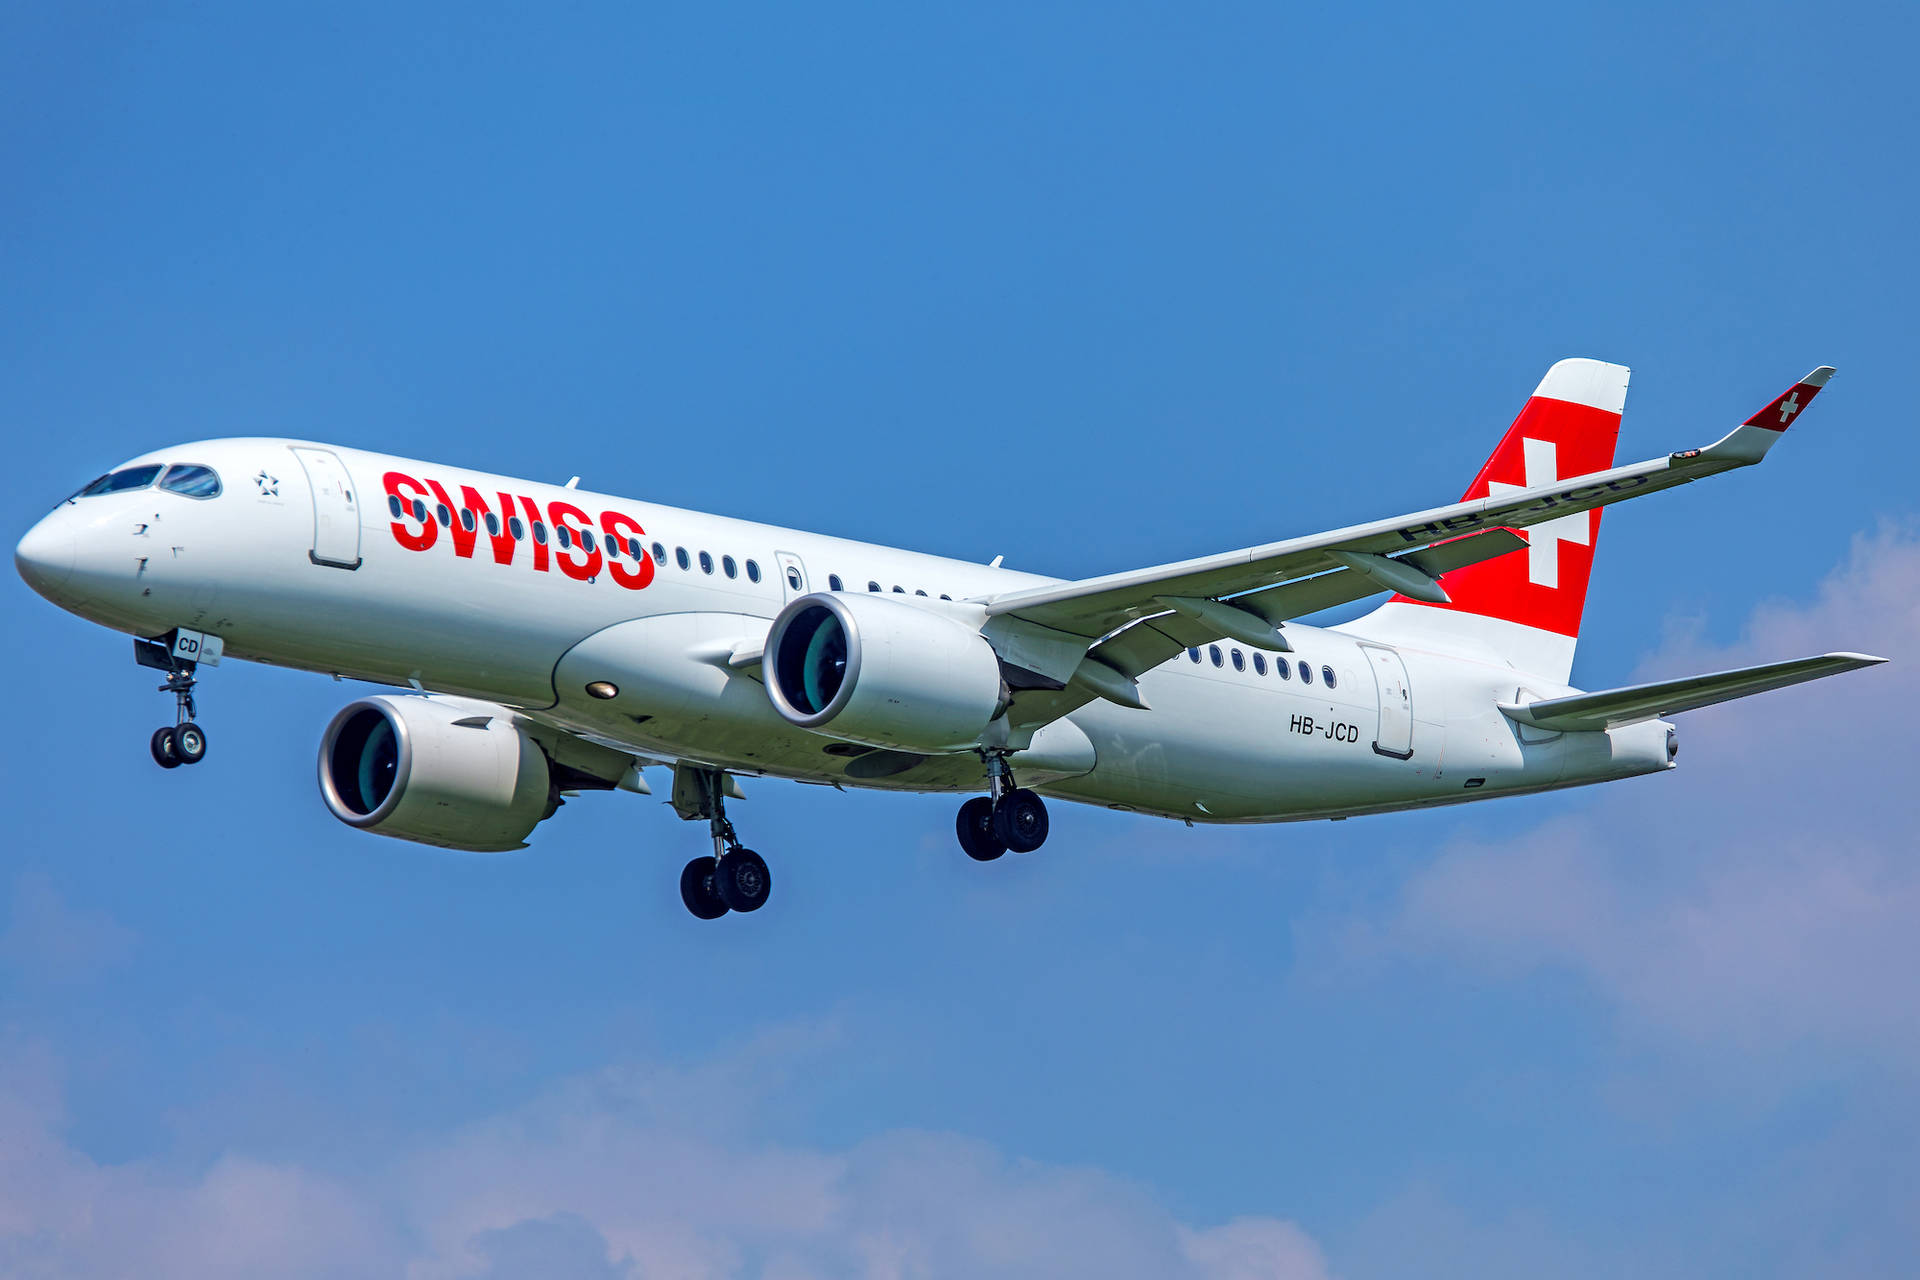 Schweiziskaflygbolag I Den Vackra Himlen. Wallpaper